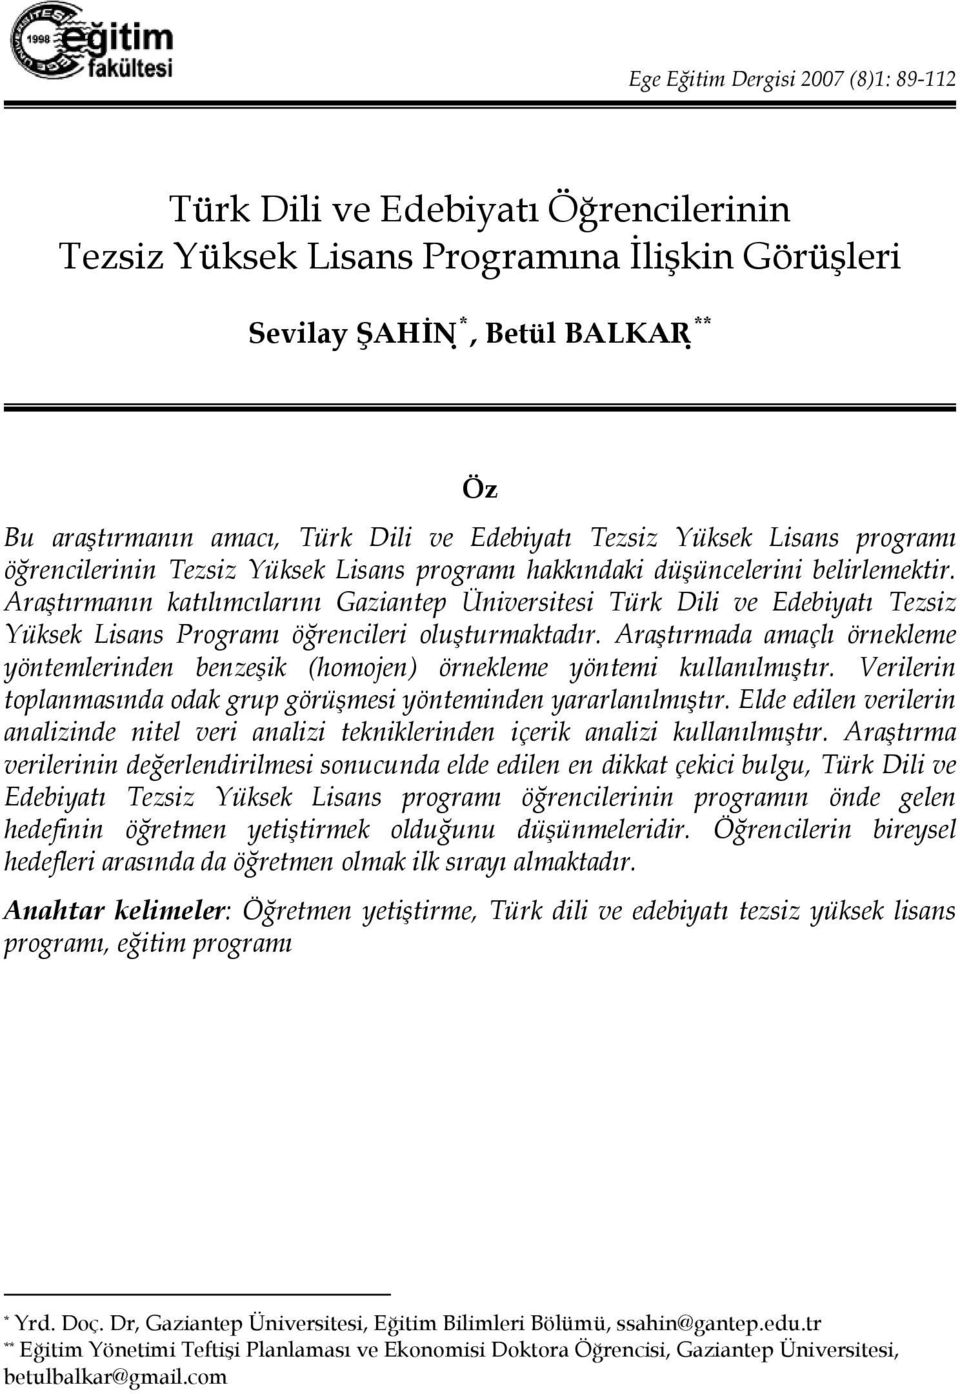 Araştırmanın katılımcılarını Gaziantep Üniversitesi Türk Dili ve Edebiyatı Tezsiz Yüksek Lisans Programı öğrencileri oluşturmaktadır.